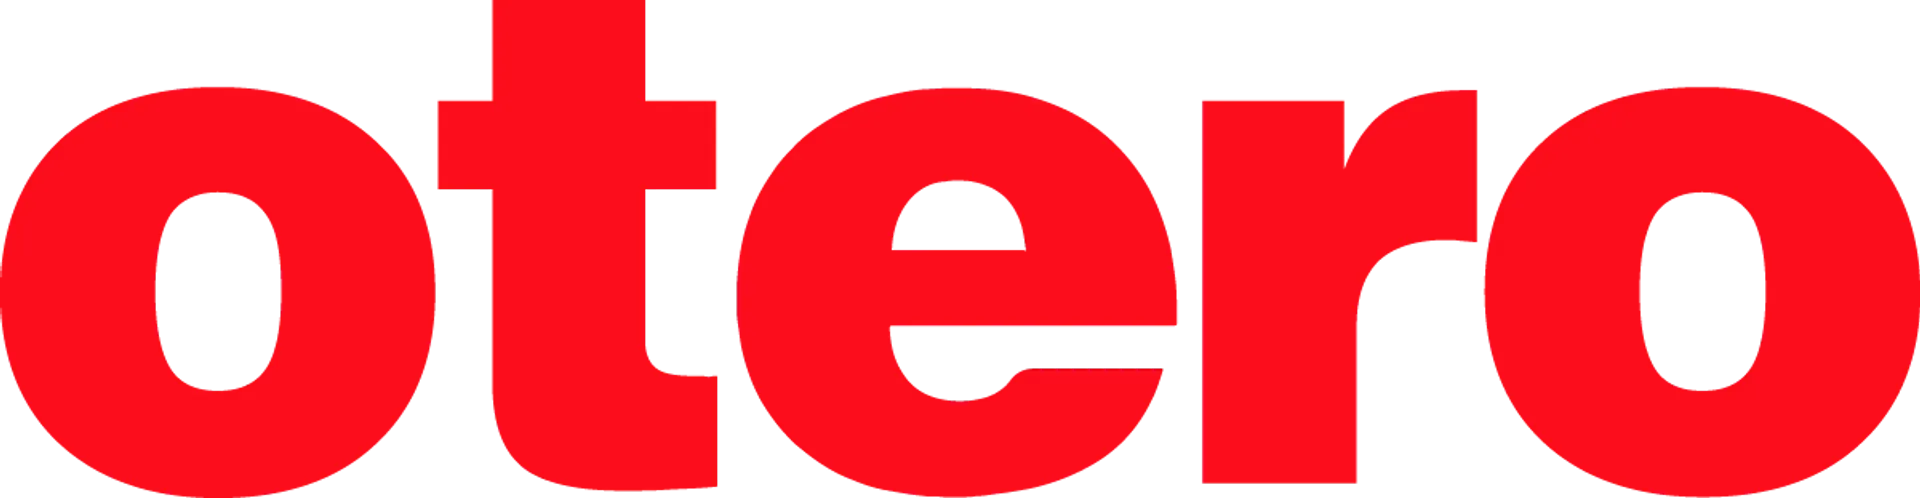 OTERO logo de catálogo